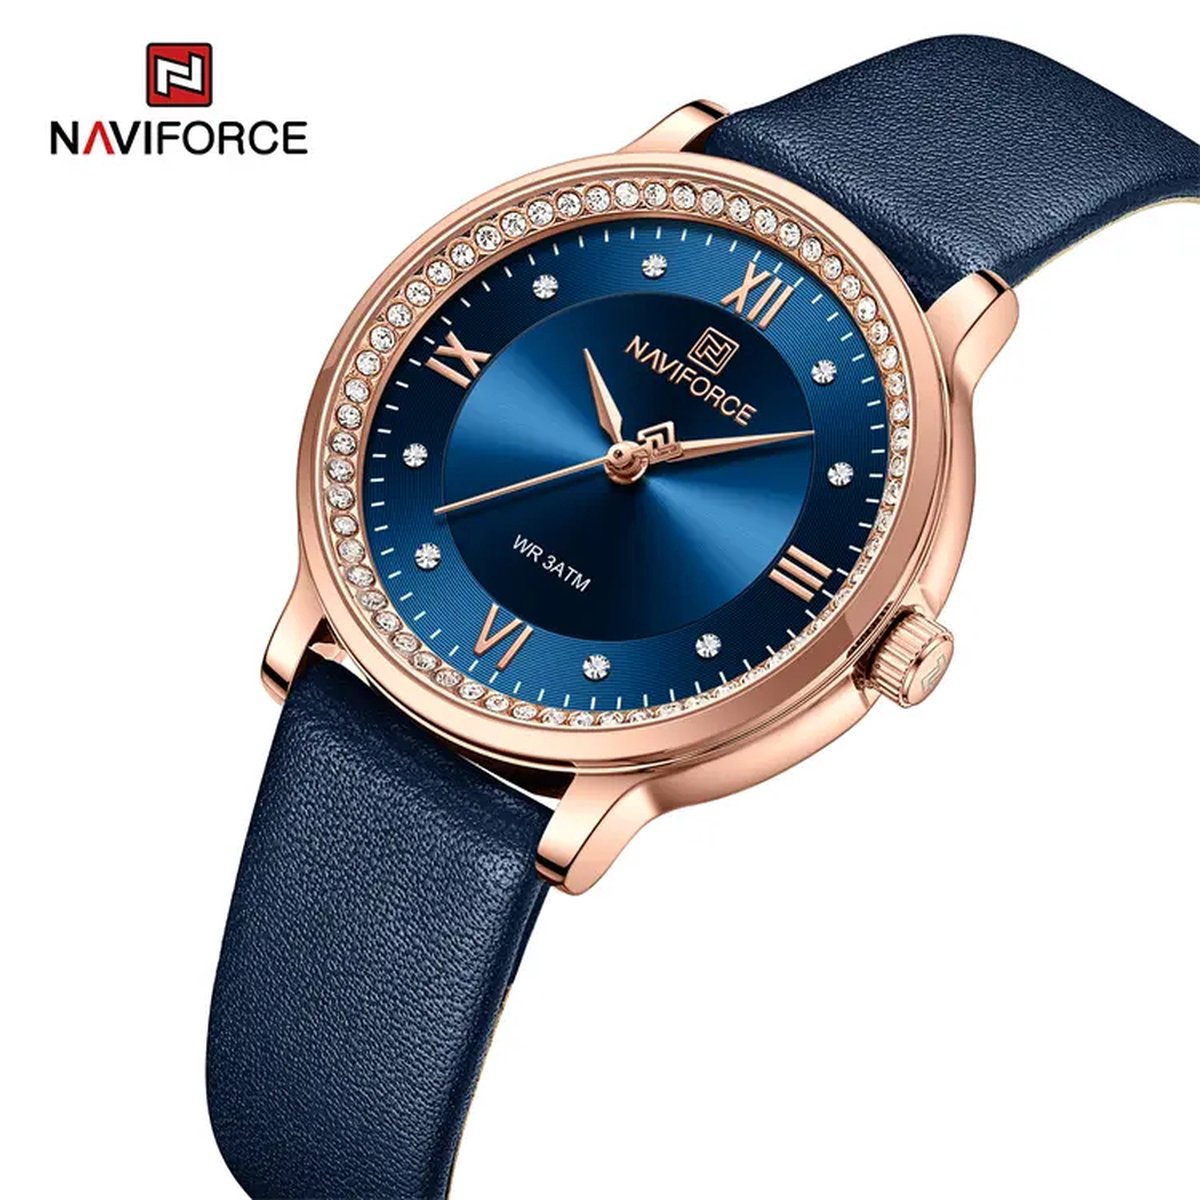 NAVIFORCE horloge met blauwe lederen polsband, blauwe wijzerplaat en rosé gouden horlogekast voor dames met stijl ( model 5036 RGBEBE )